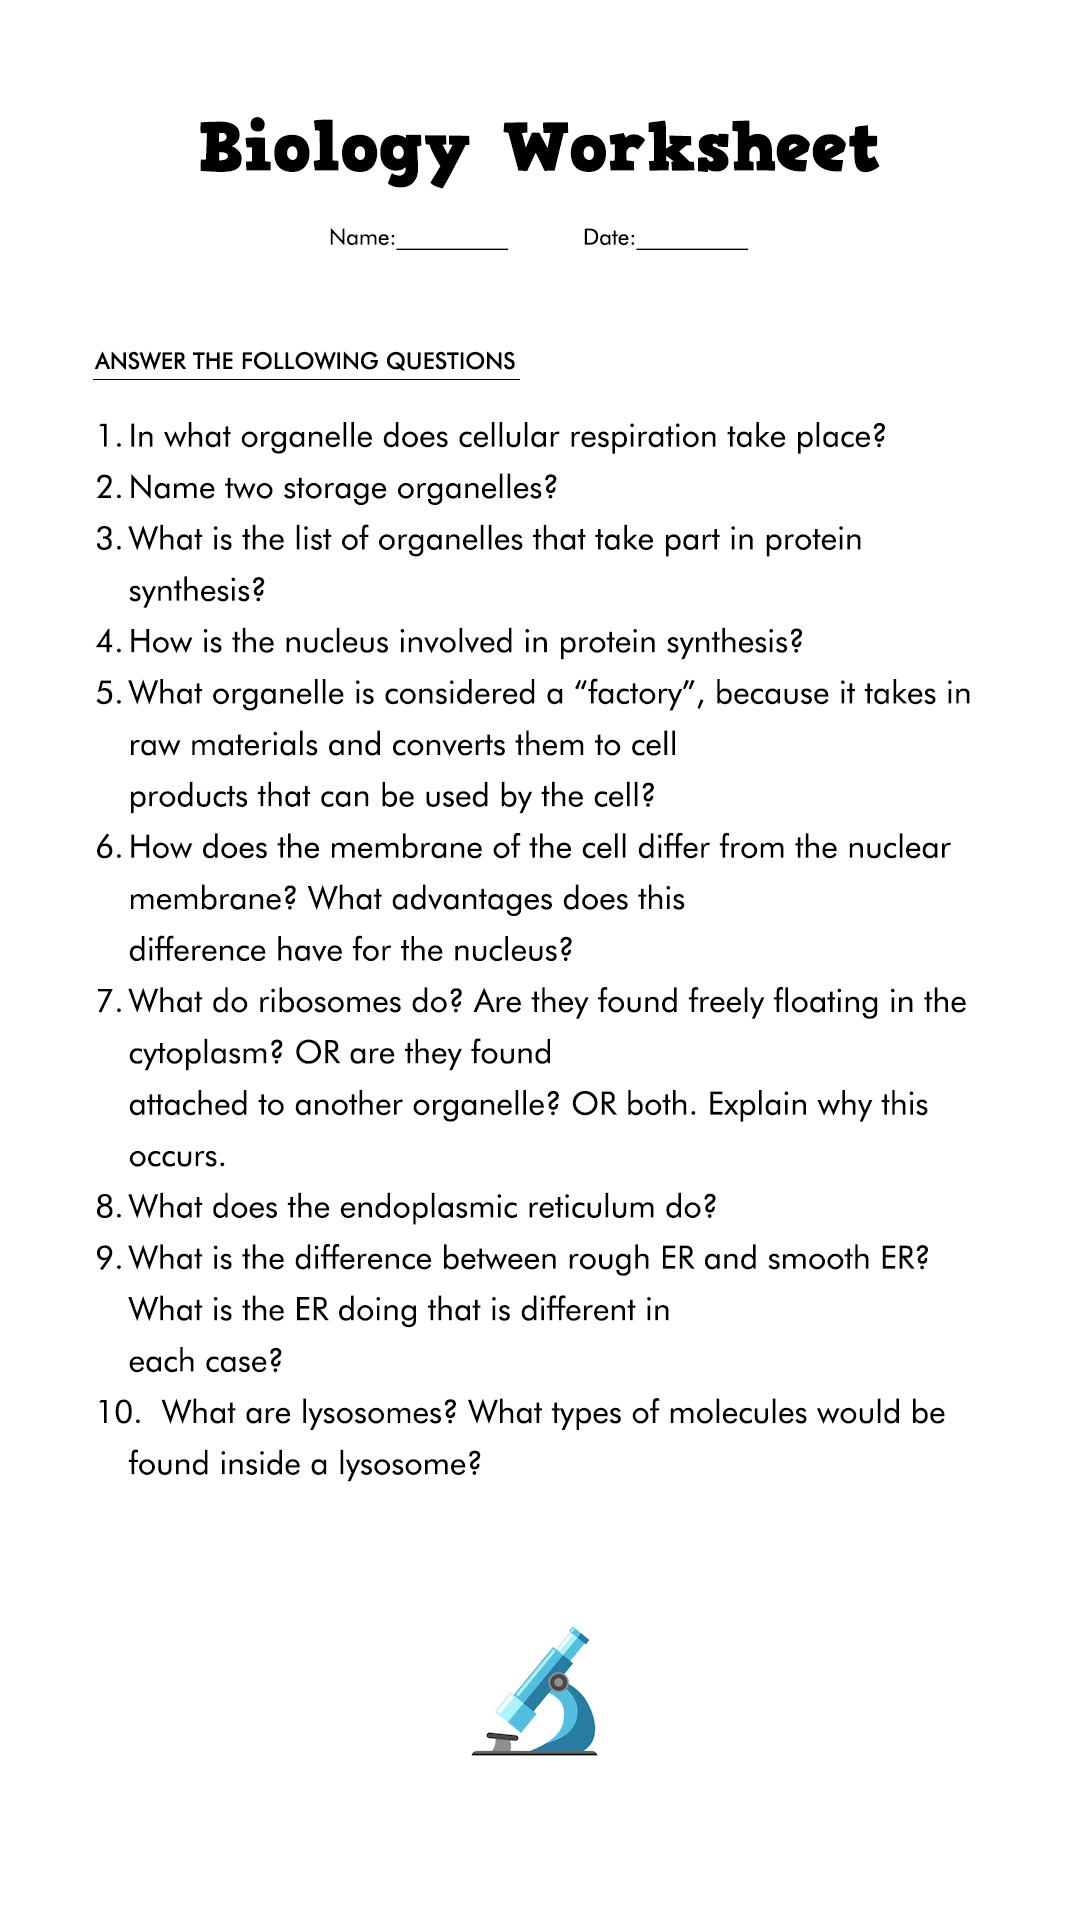 Biology Cell Worksheets Image